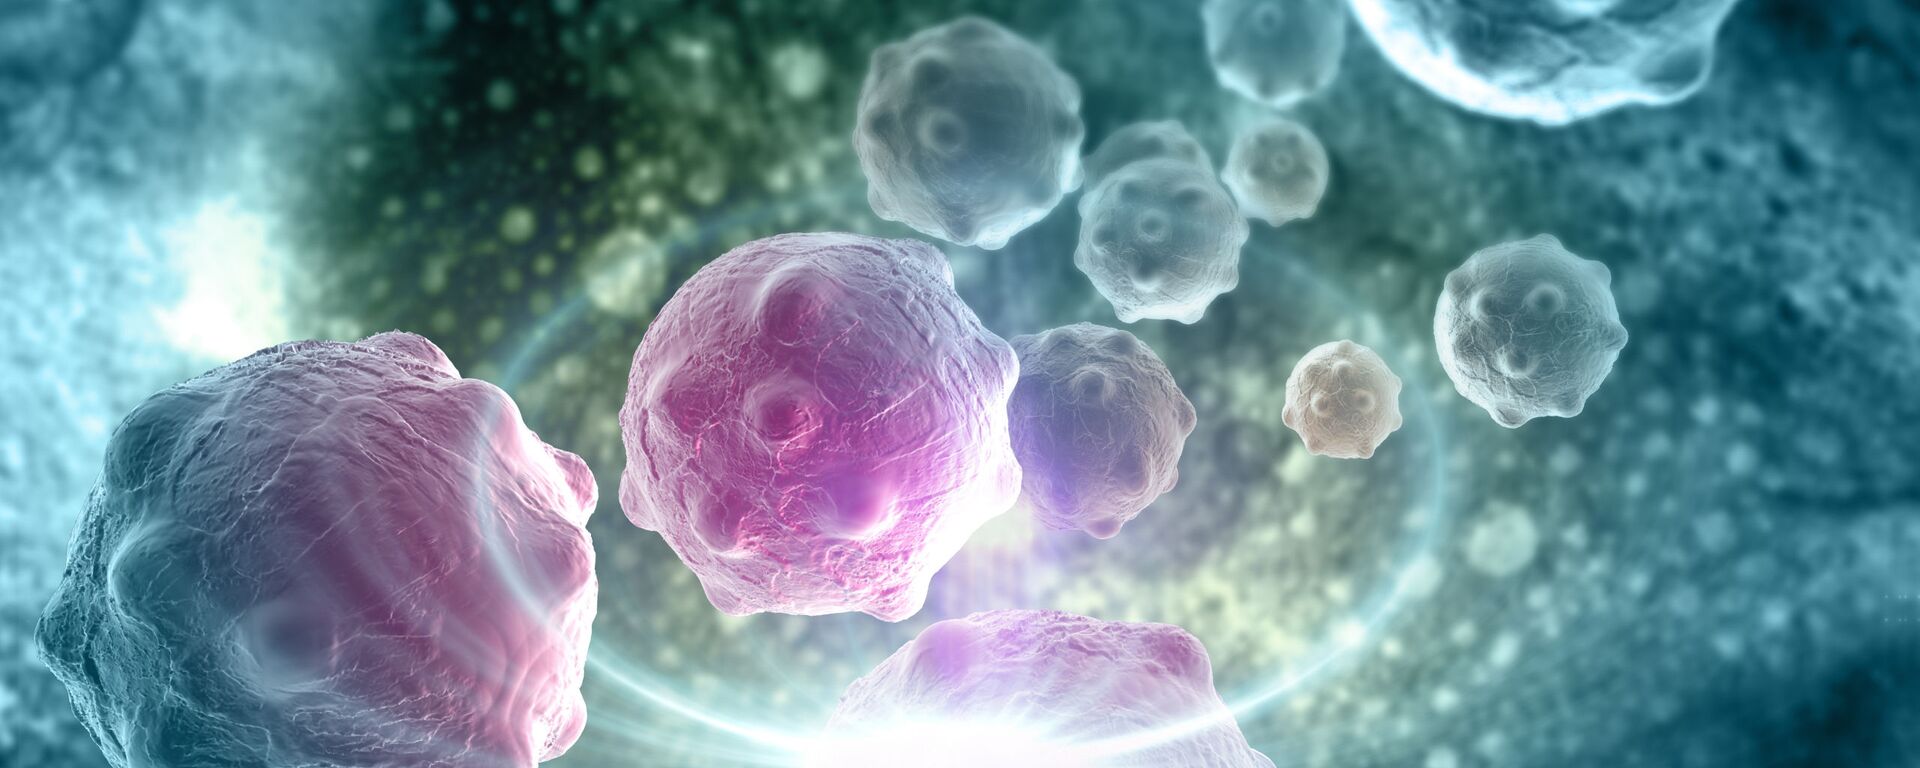 خلايا سرطانية - سبوتنيك عربي, 1920, 09.12.2020